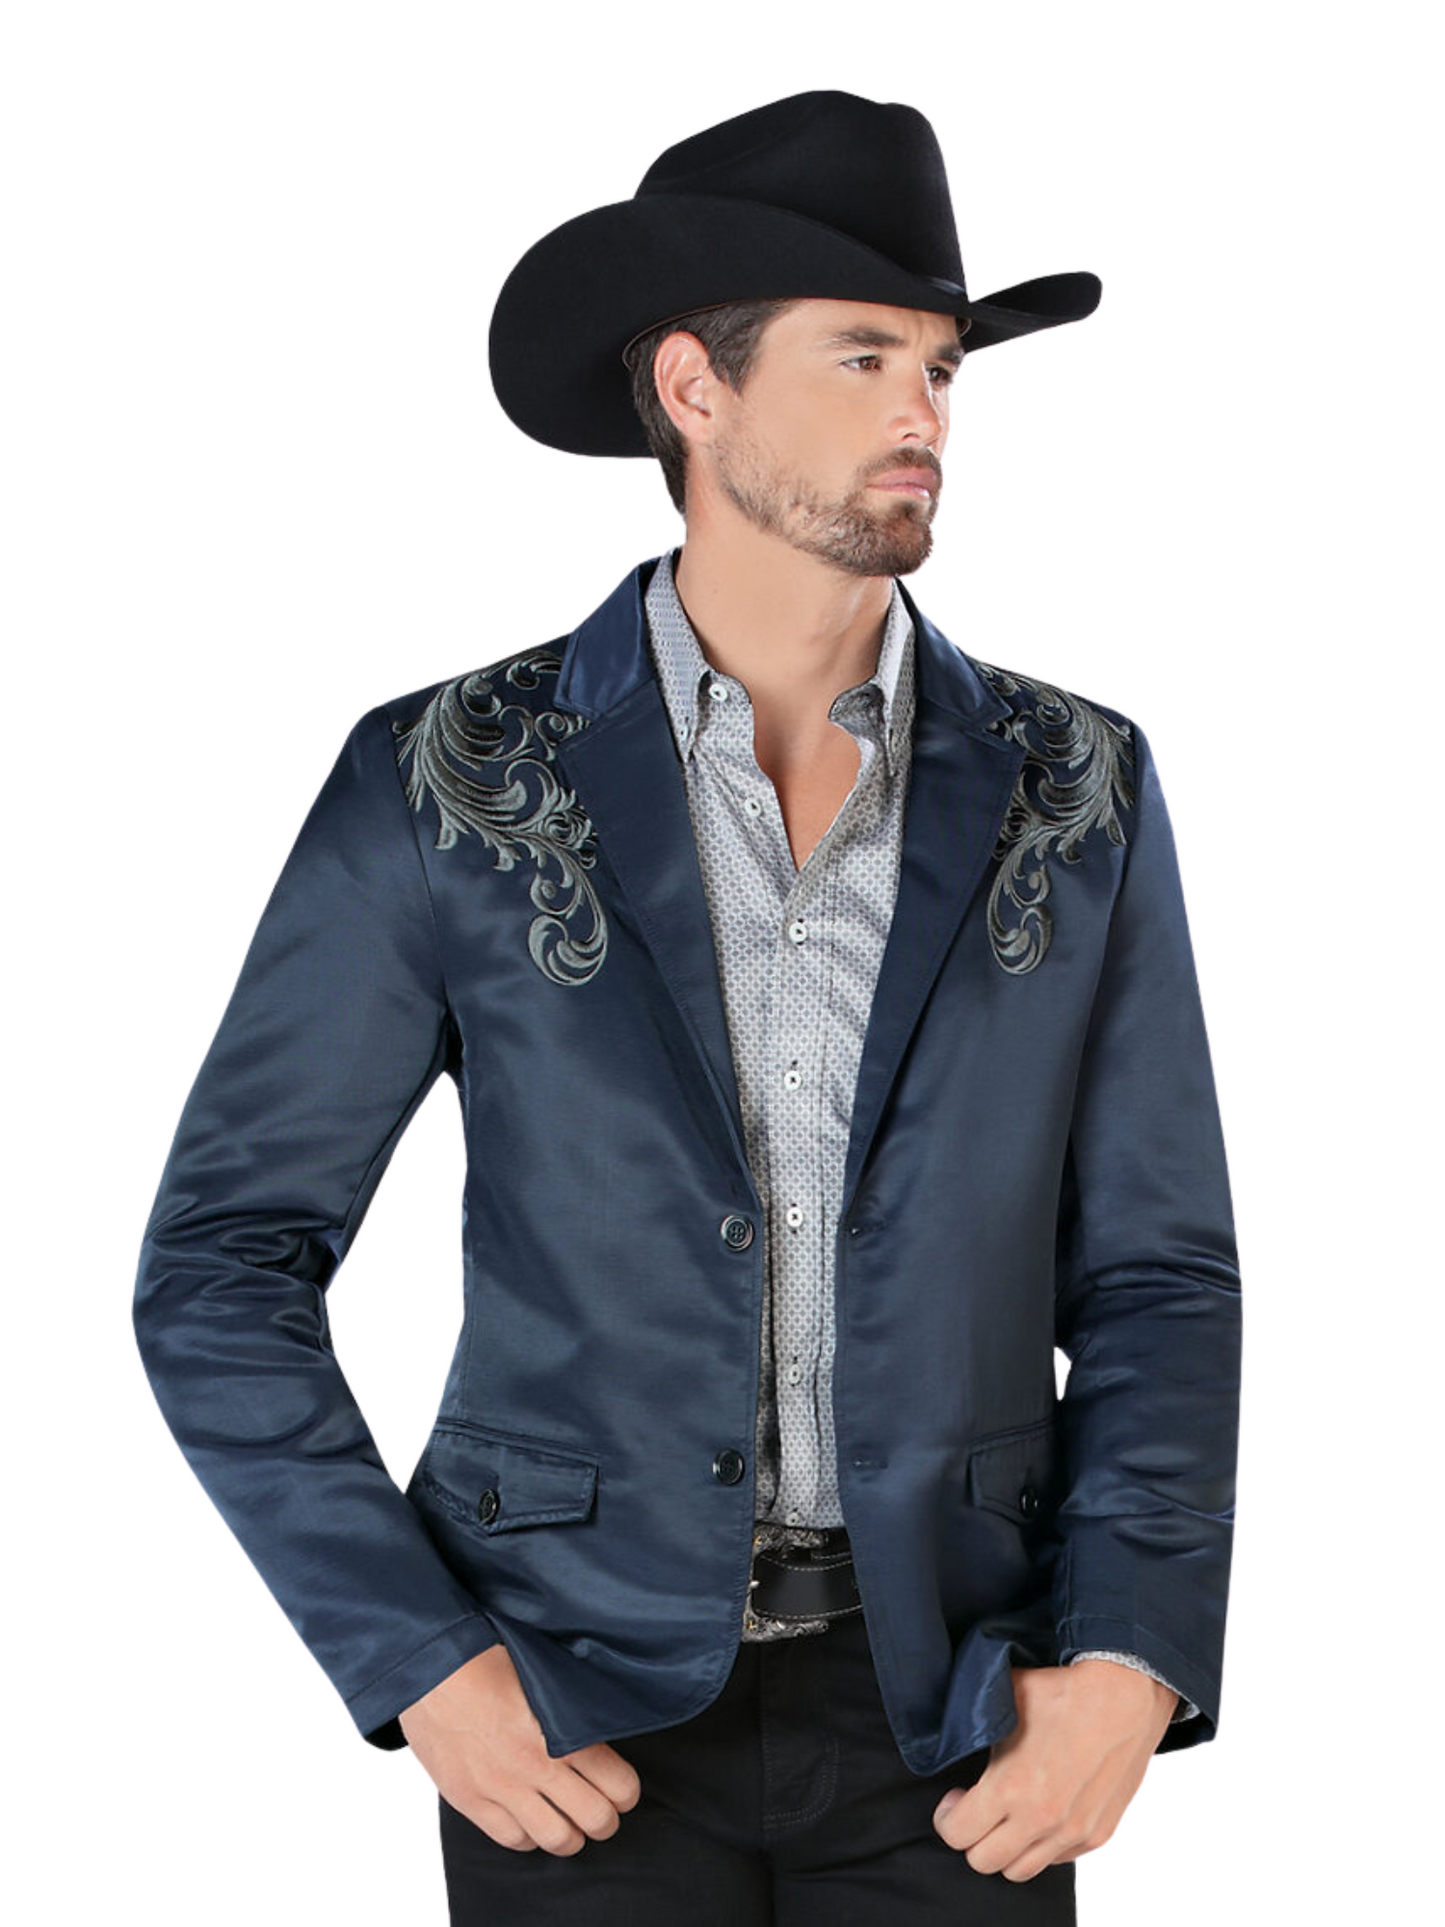 Embroidered Denim Jacket for Men 'Montero' - ID: 2173 Western Blazer Montero Navy